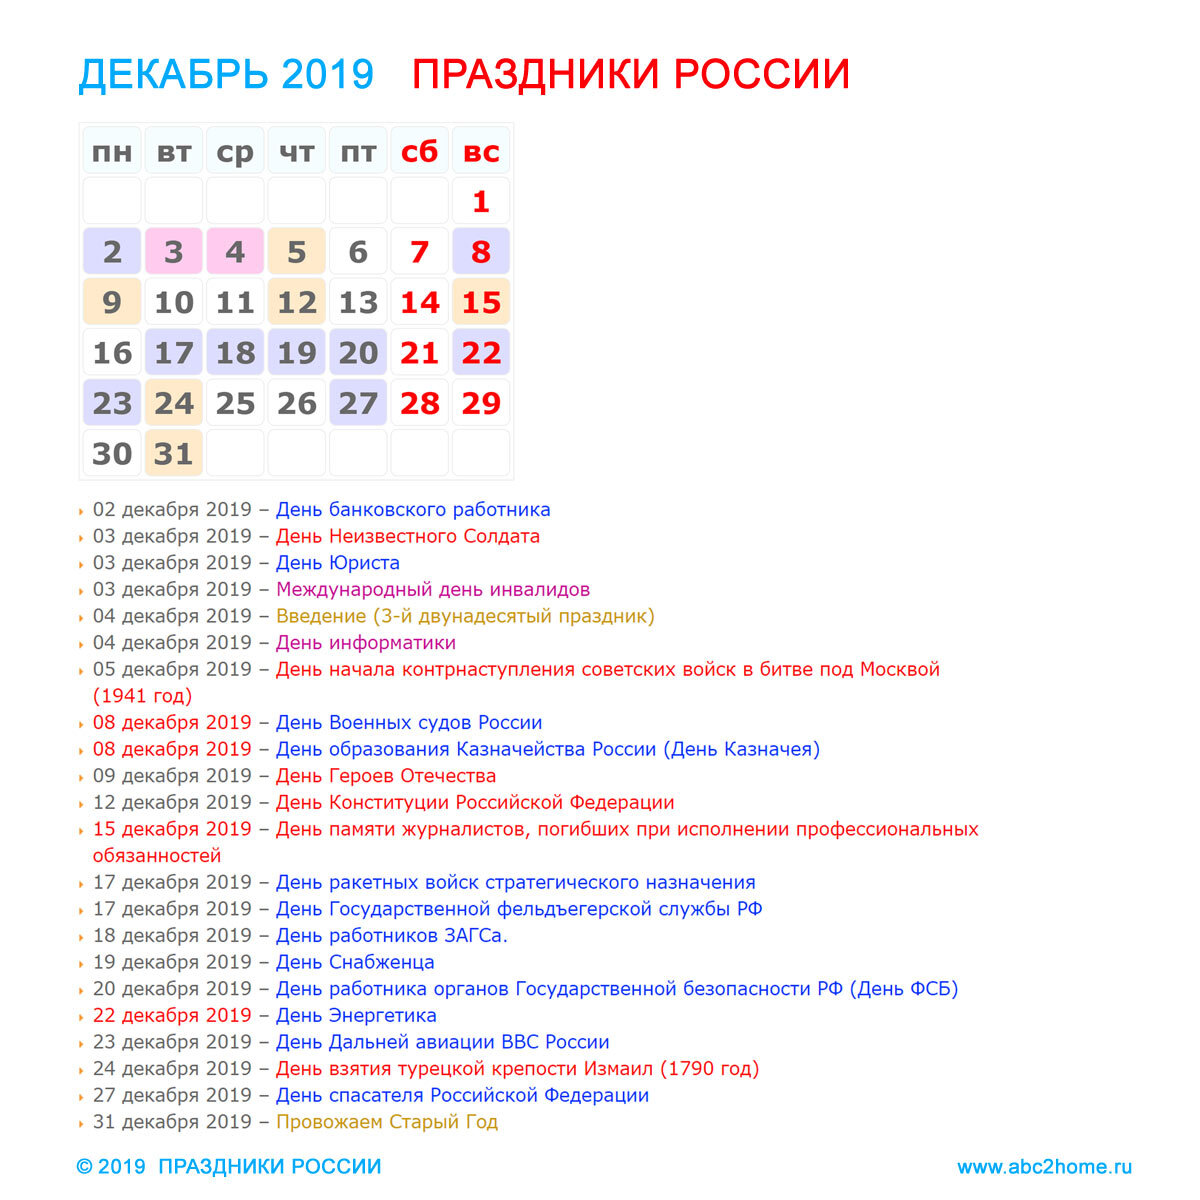 Праздники России в декабре 2019 года | ABC2home.ru | Дзен